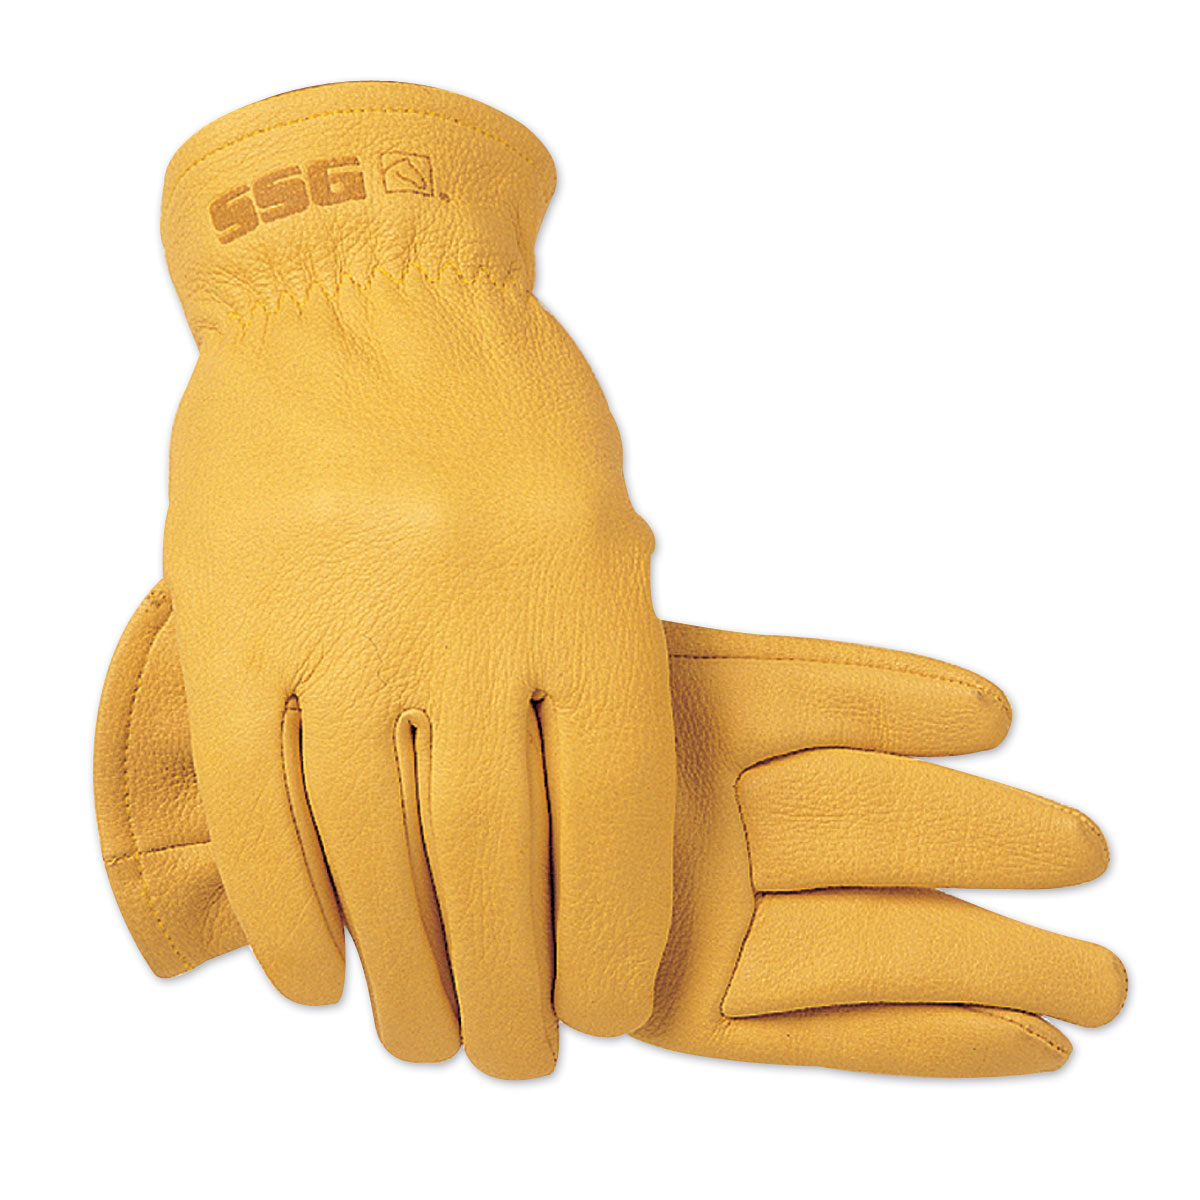 SSG Rancher Gloves 